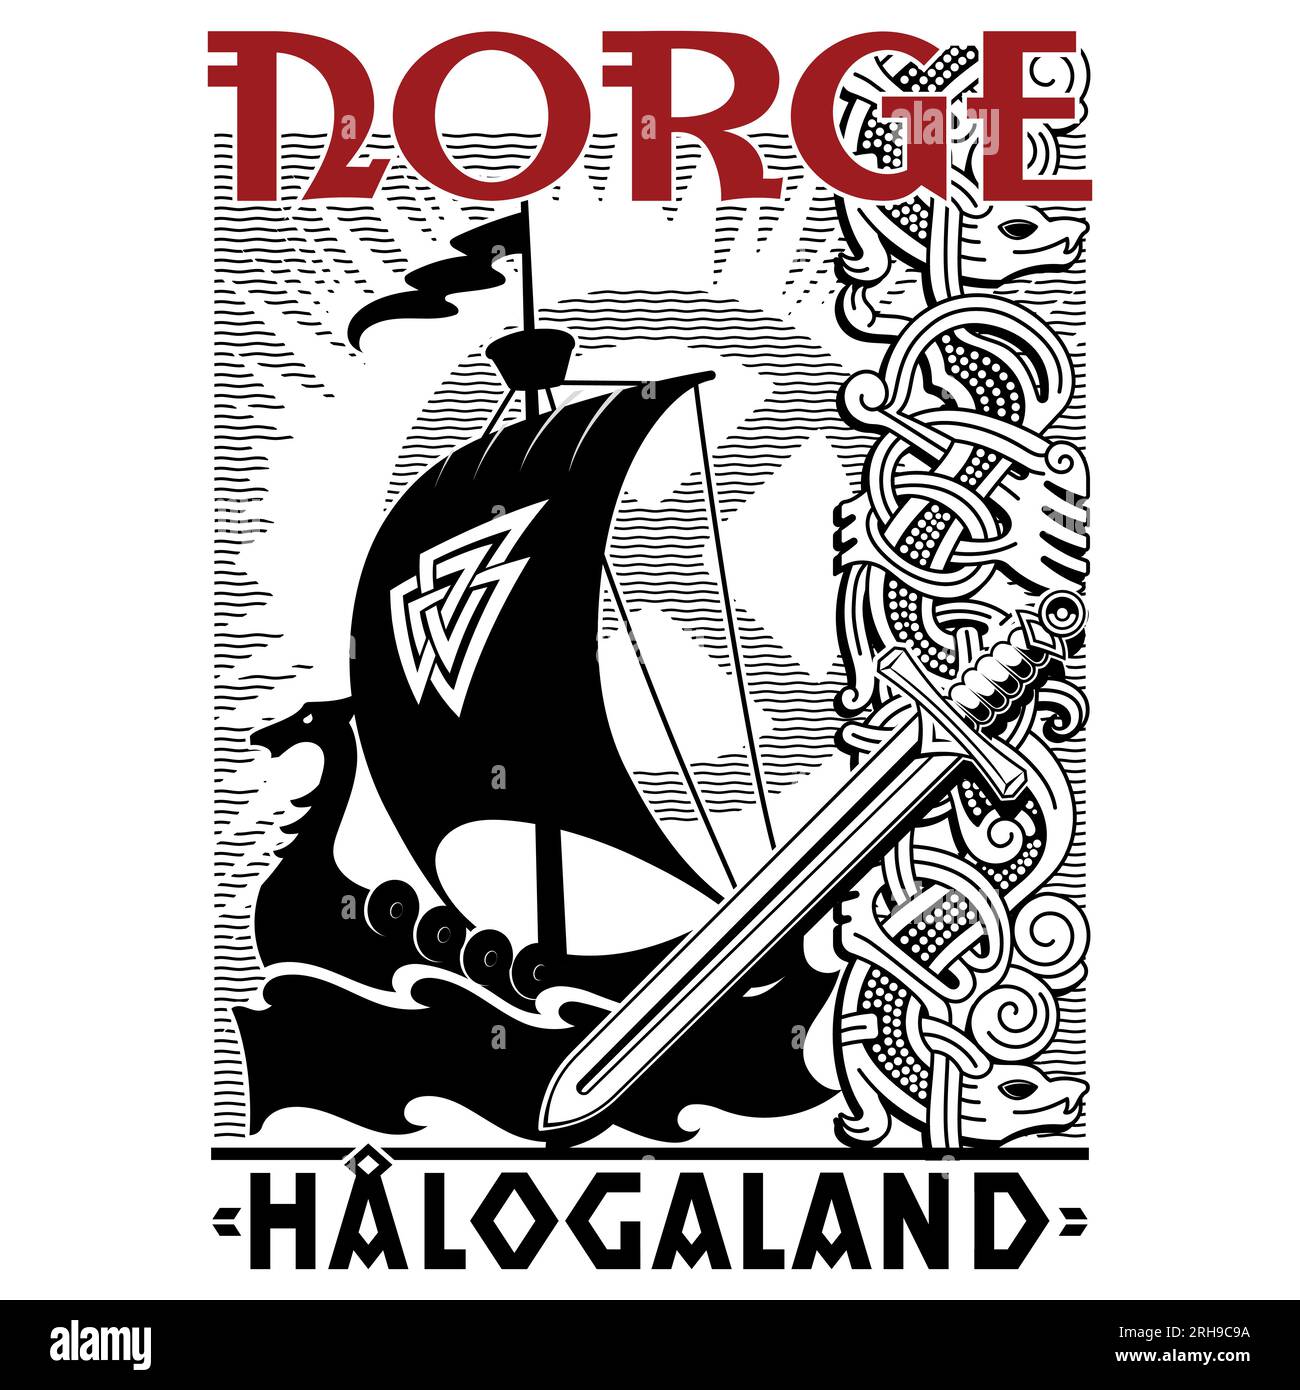 Design scandinave ancien. Navire viking Drakkar, épée, roue solaire, motif vieux norrois et inscription Norvège Illustration de Vecteur